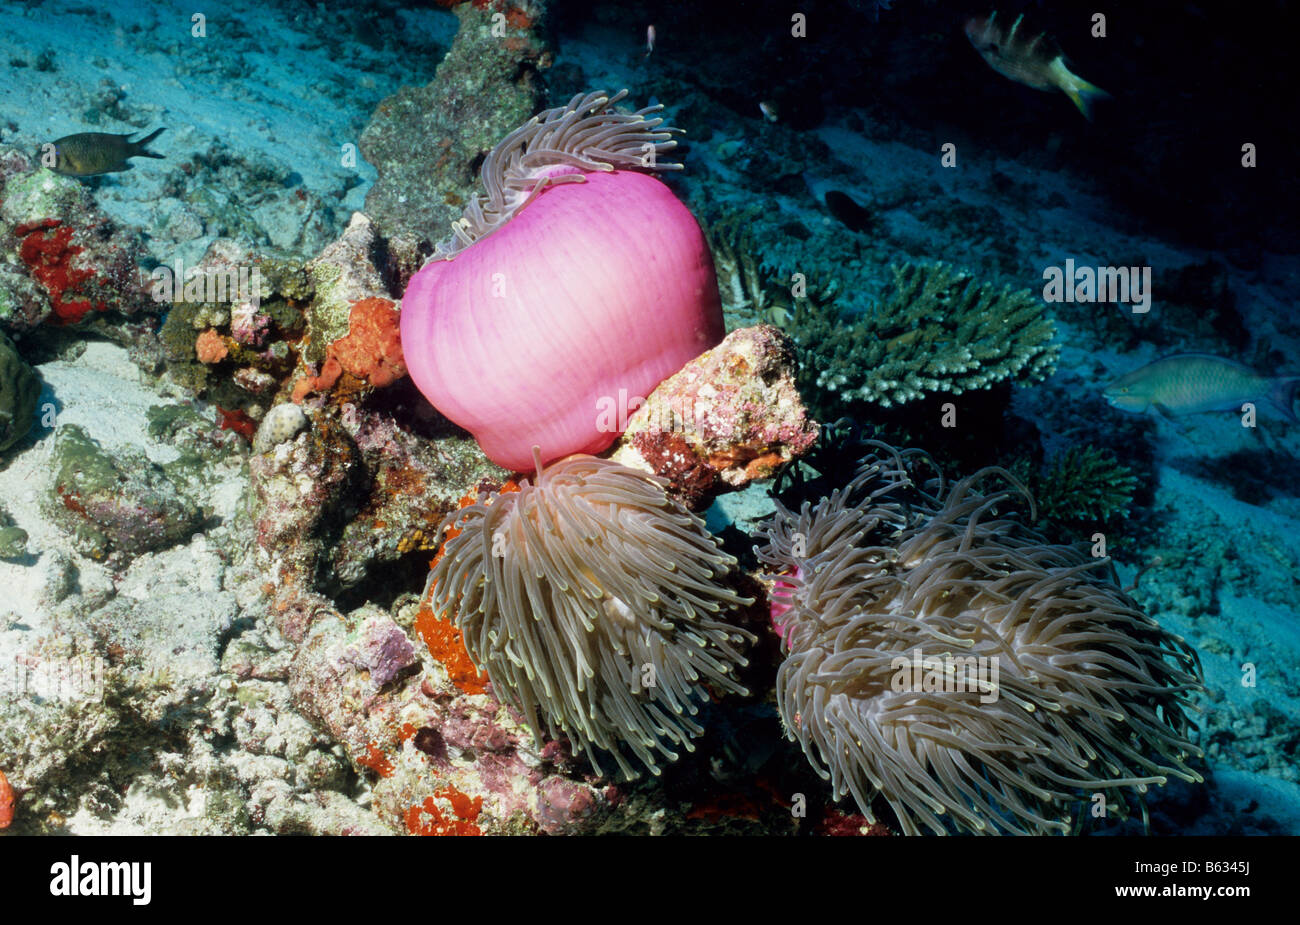 Lila, herrliche Seeanemone mit Tentakeln, die teilweise erweitert. Marine Unterwasserwelt der Malediven. Zoantharia. Stockfoto